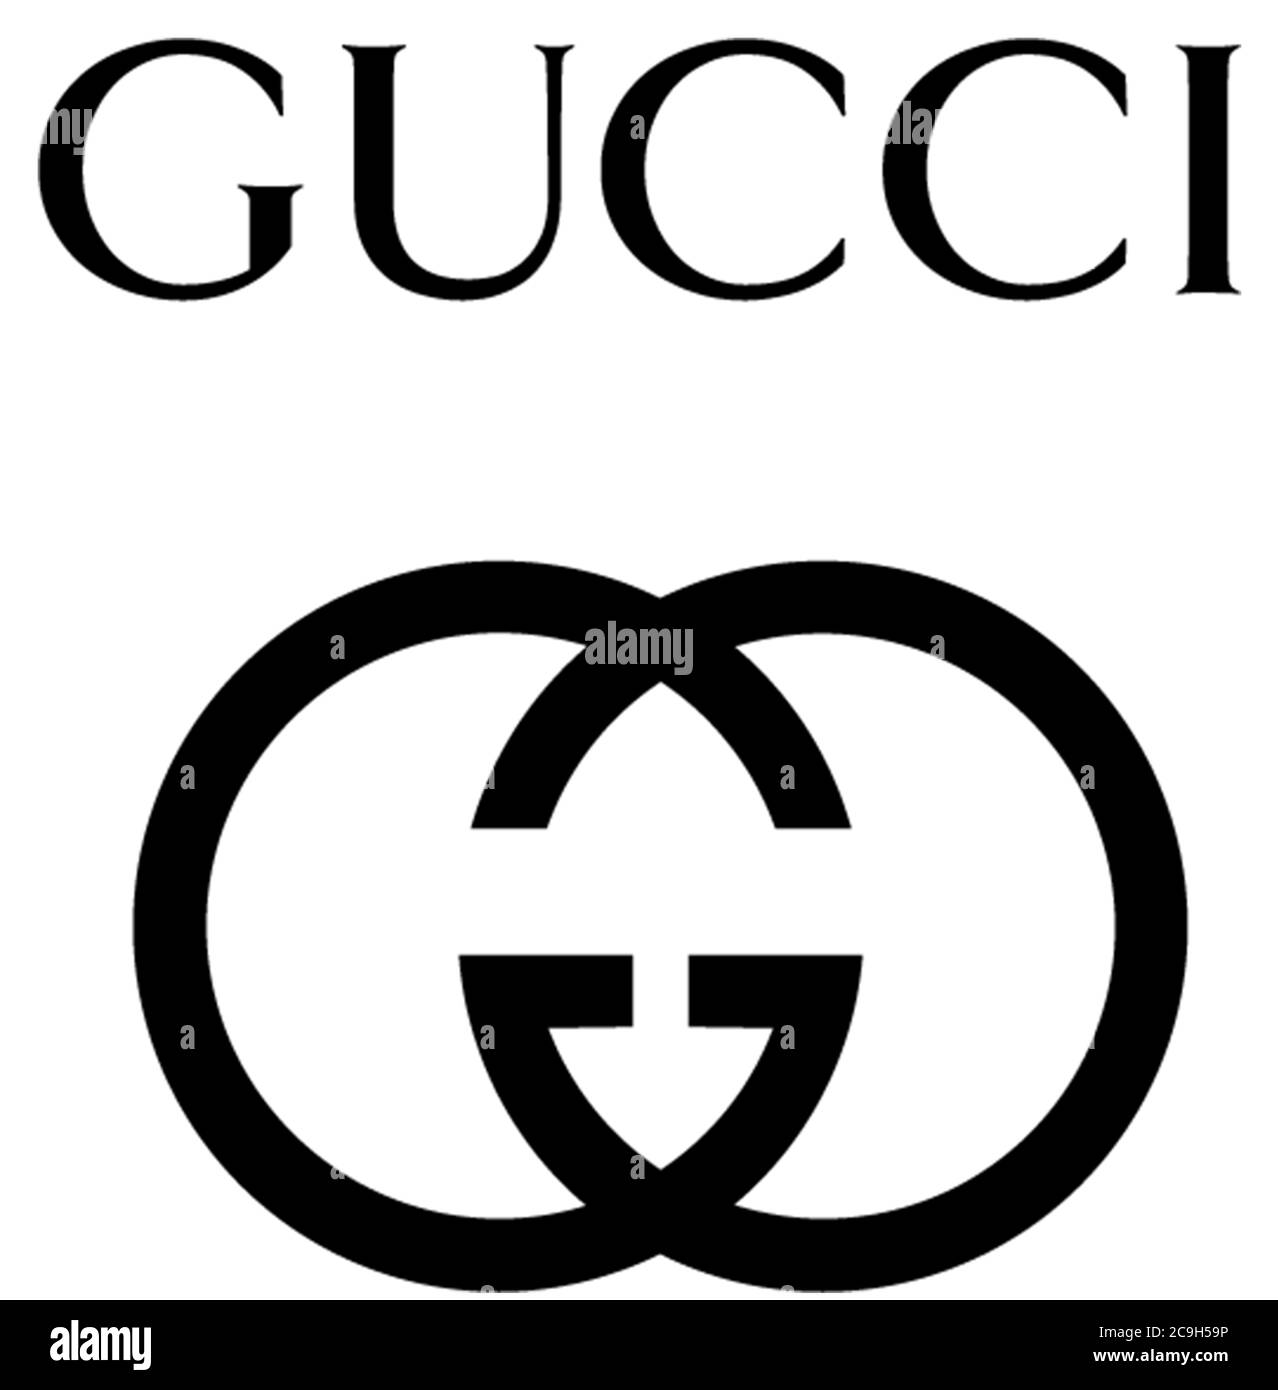 Fashion label gucci Banque d'images noir et blanc - Alamy